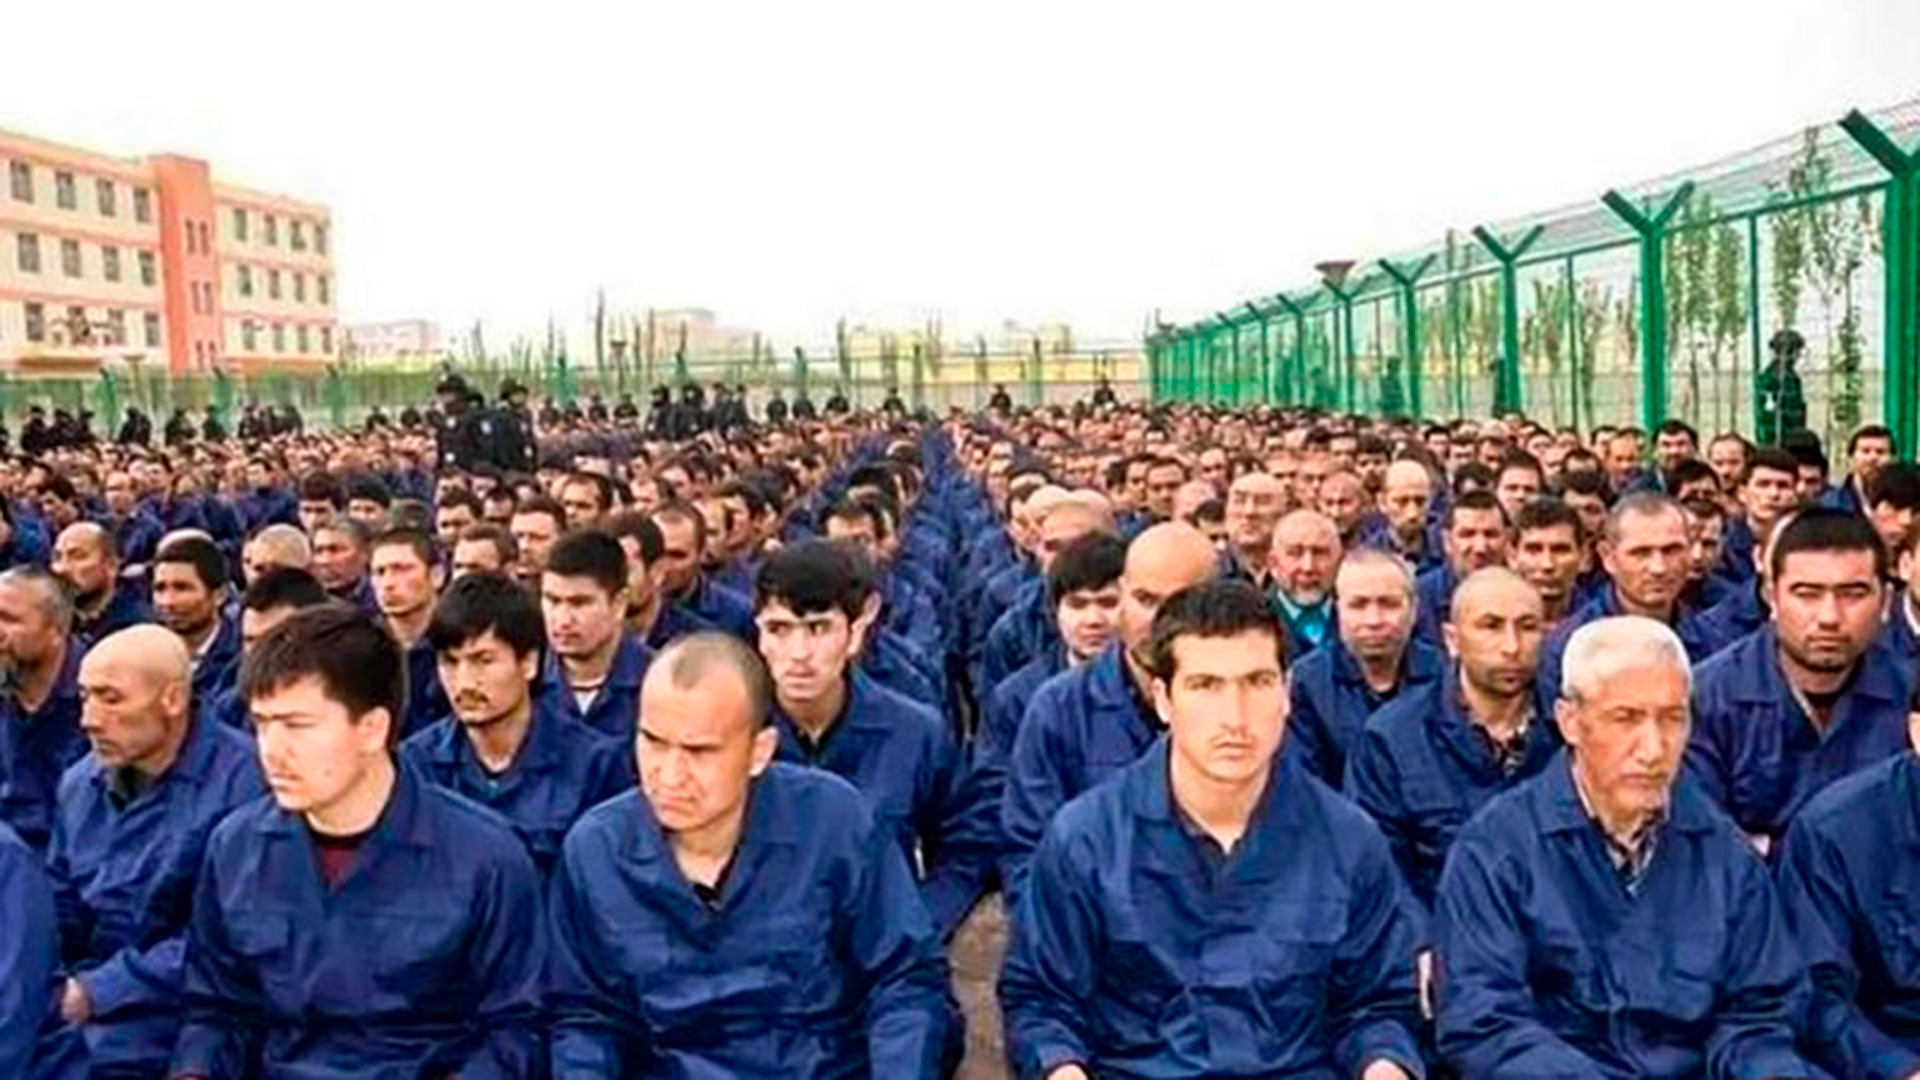 El régimen chino es acusado de graves violaciones a los derechos humanos contra las minorías uigures
